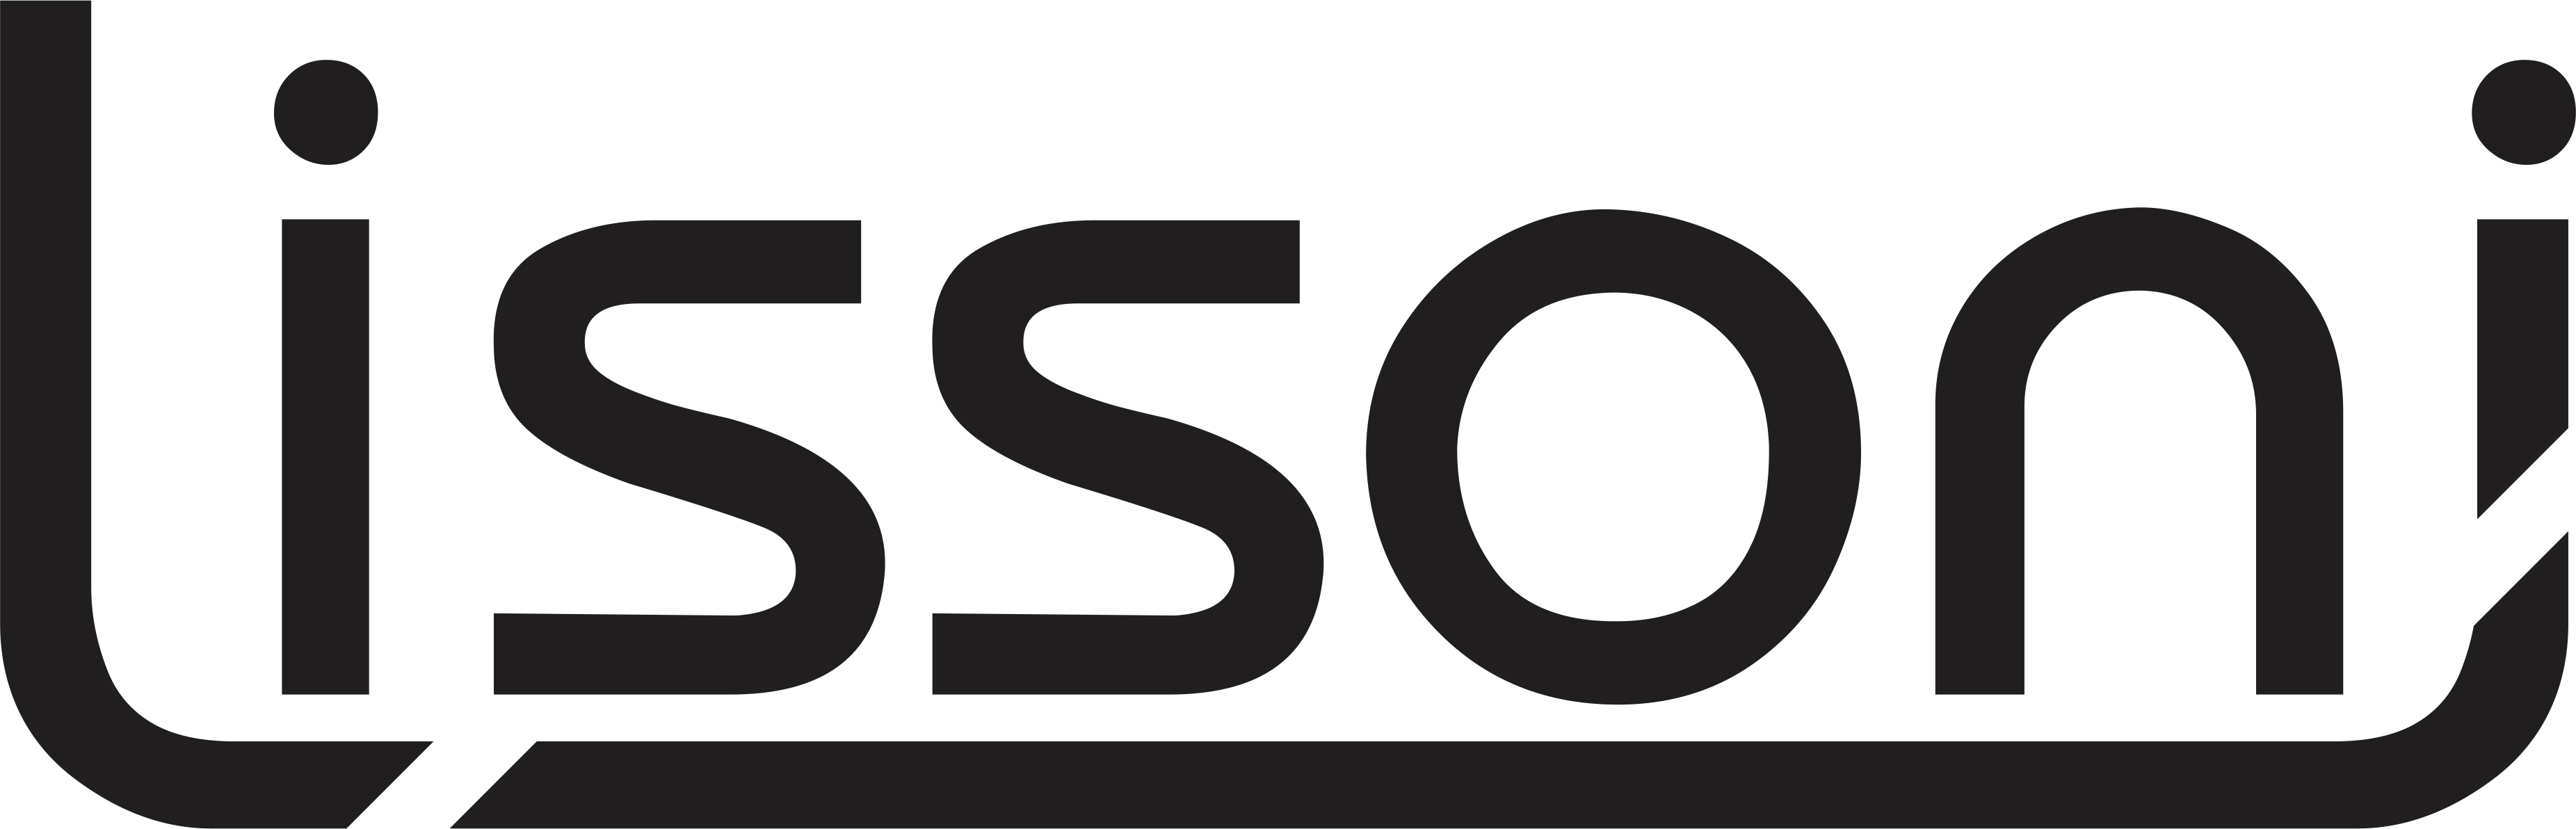 Logotipo Lissoni